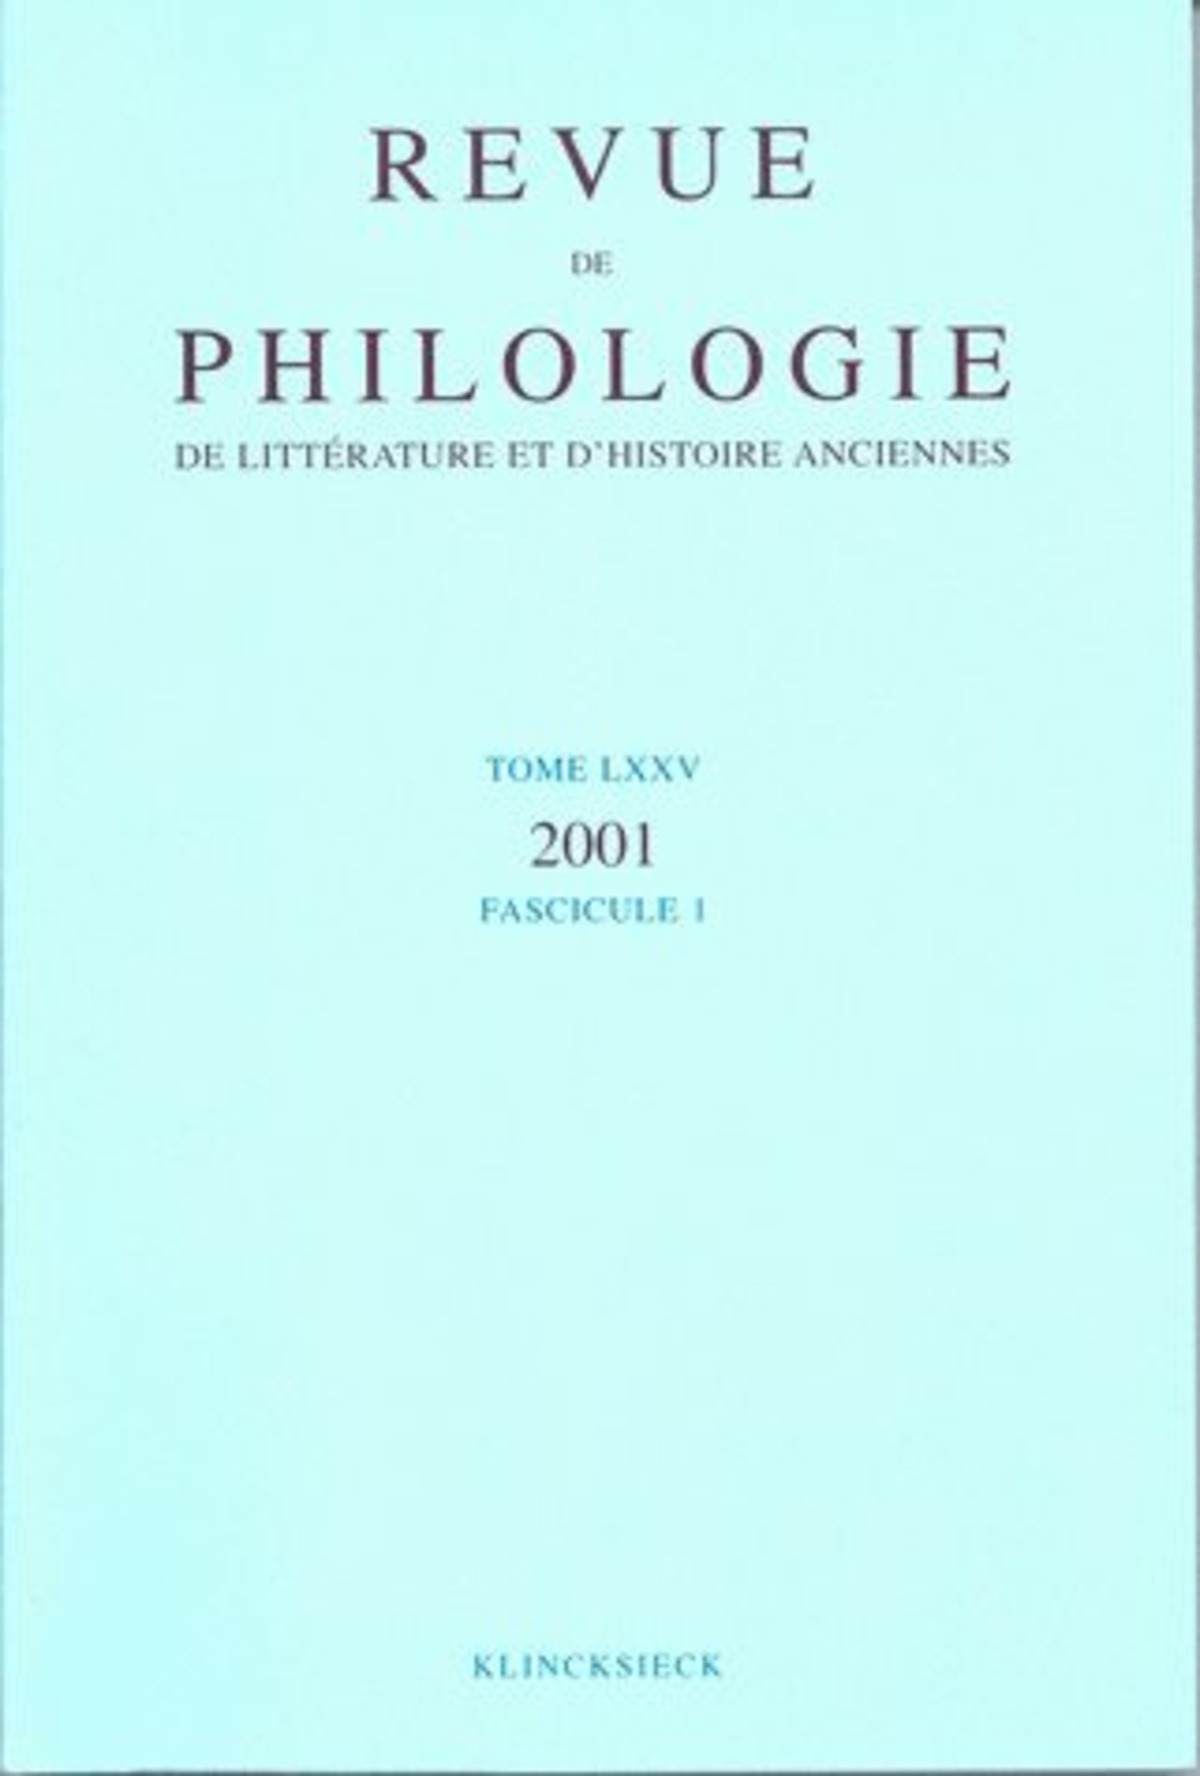 Revue de philologie, de littérature et d'histoire anciennes volume 75